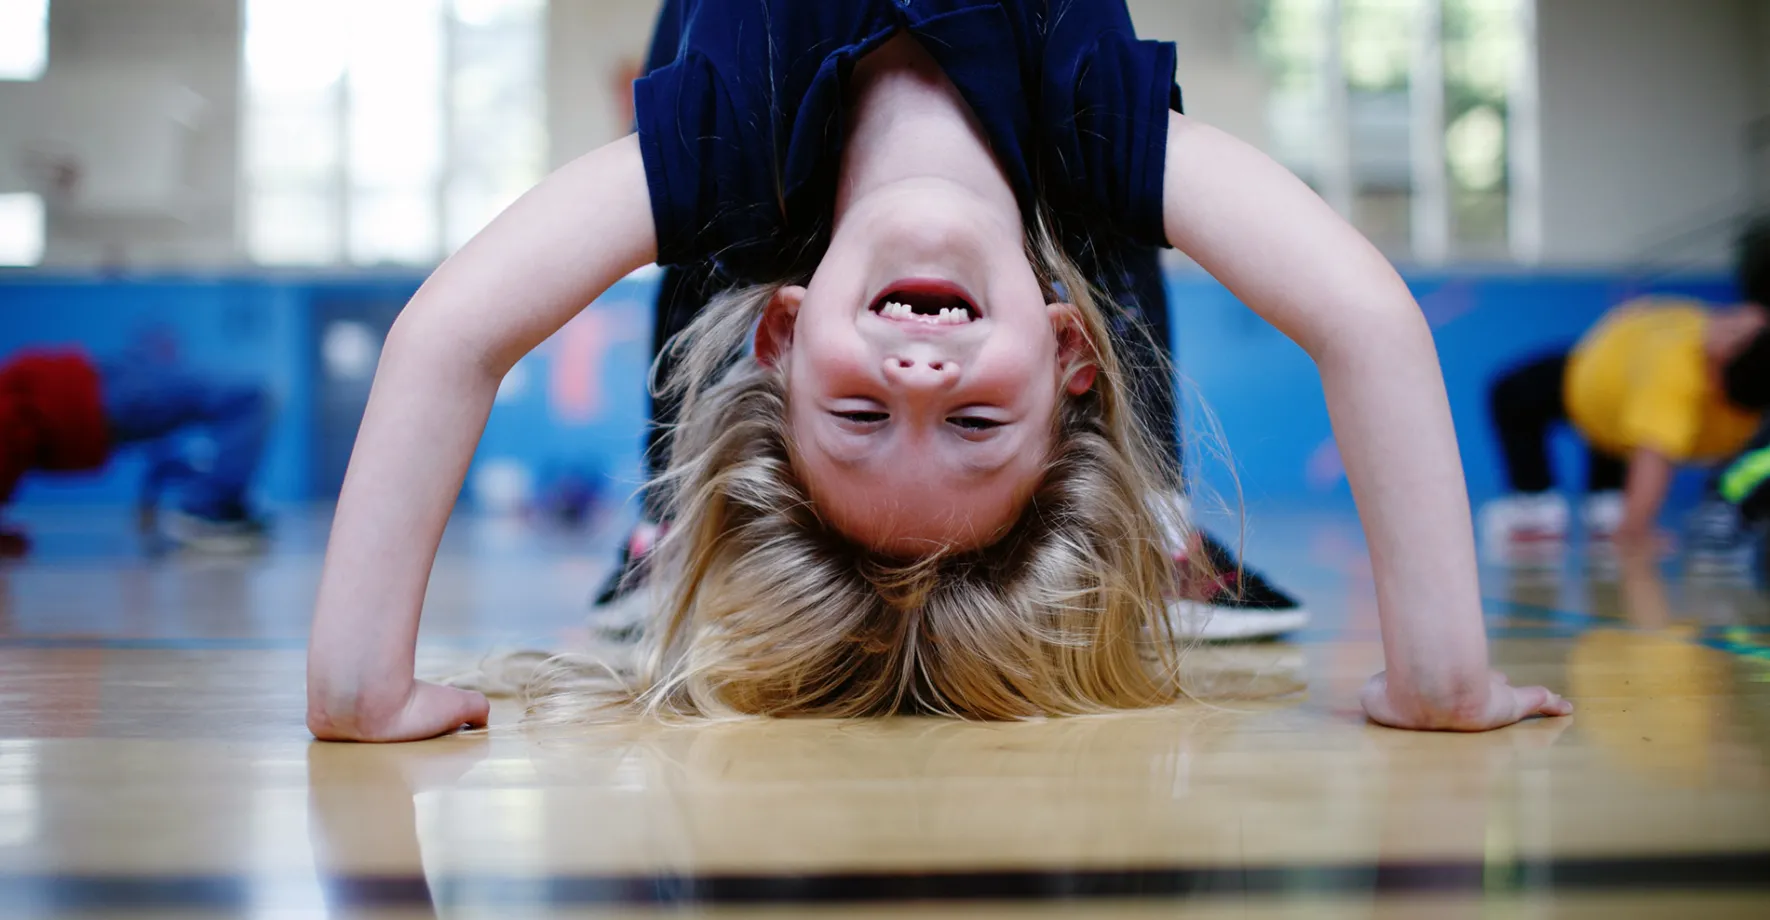 A little girl doing a headstand